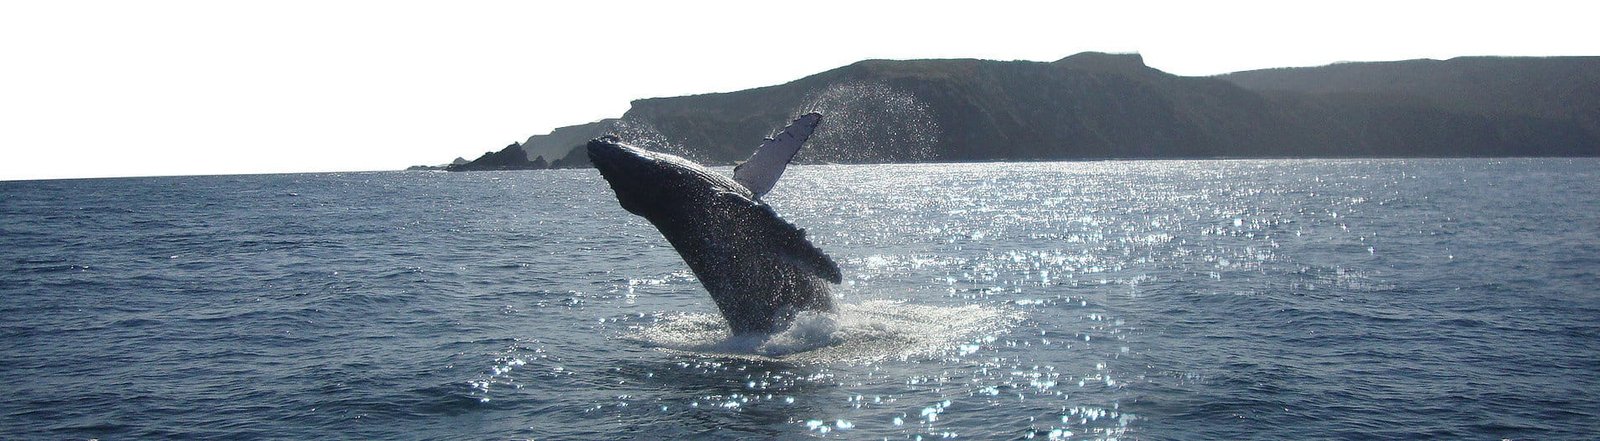 Comment pratiquer le tourisme durable auprès des baleines en Équateur